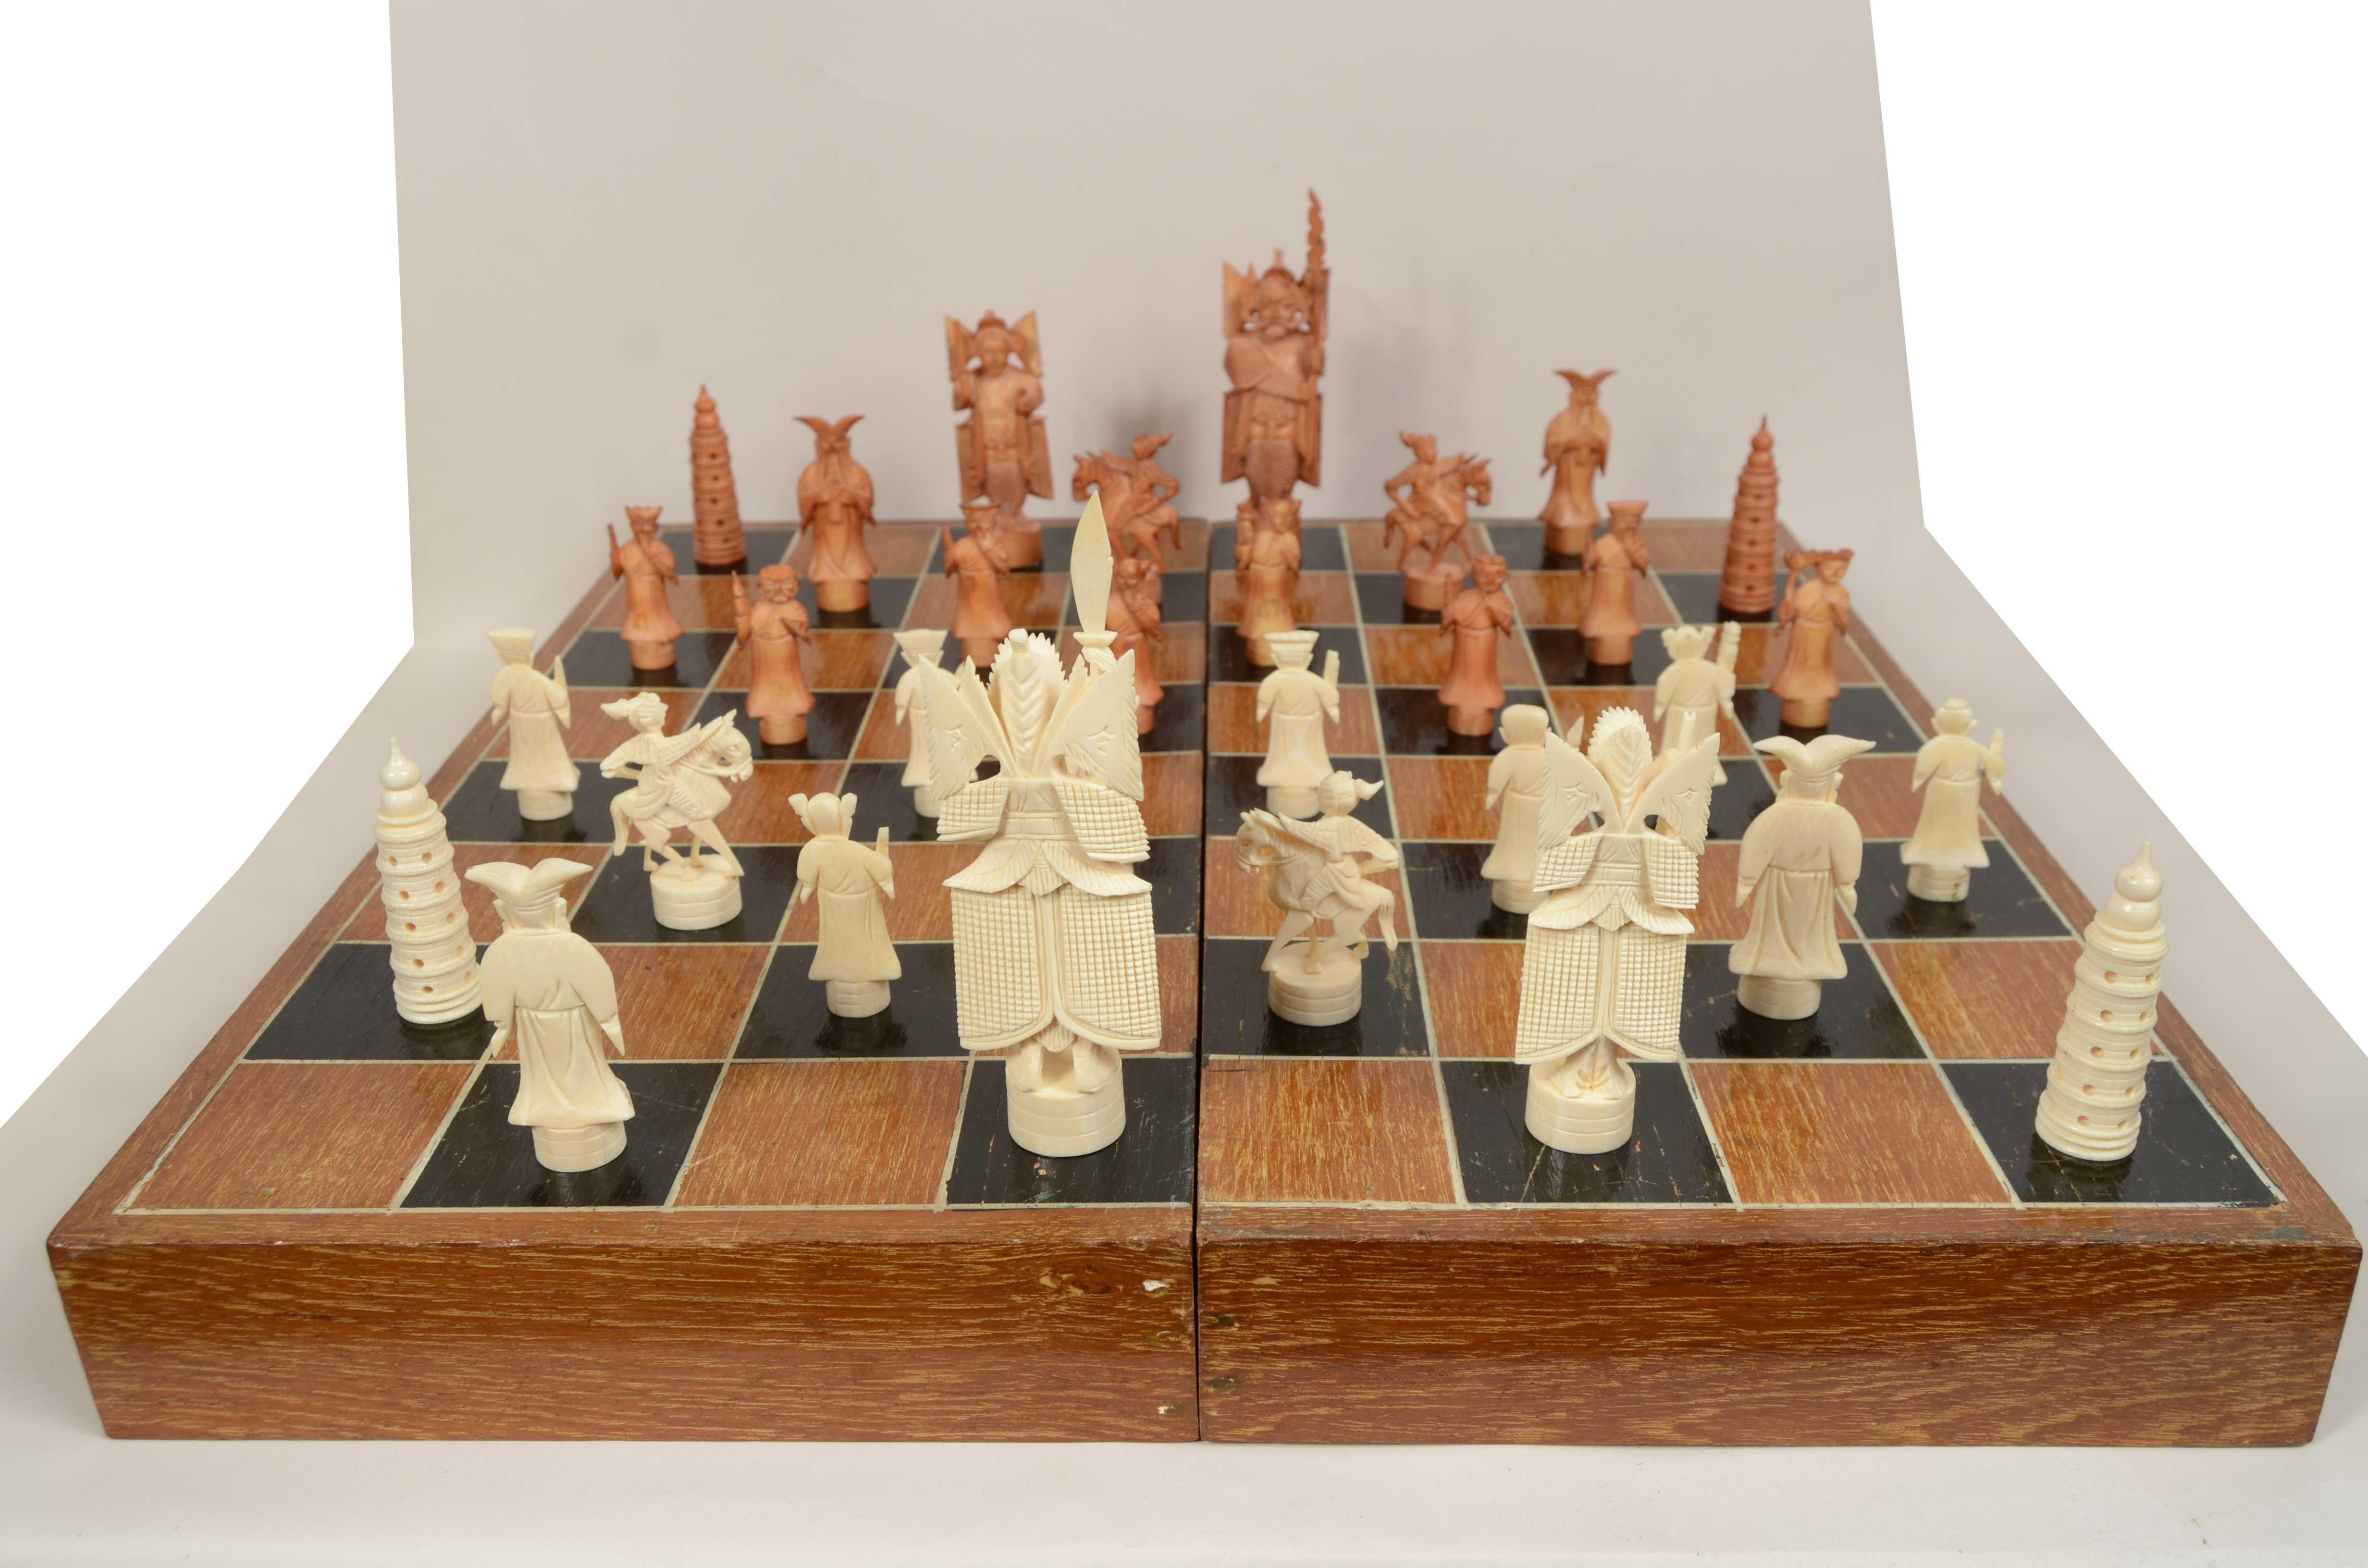 Schachspiel aus Elfenbein, bestehend aus 32 geschnitzten Steinen unterschiedlicher Größe in zwei verschiedenen Farben. Die Bauern sind untergebracht  in ihrer Originalschachtel, die innen mit blauem Samt ausgekleidet ist und geöffnet als Schachbrett